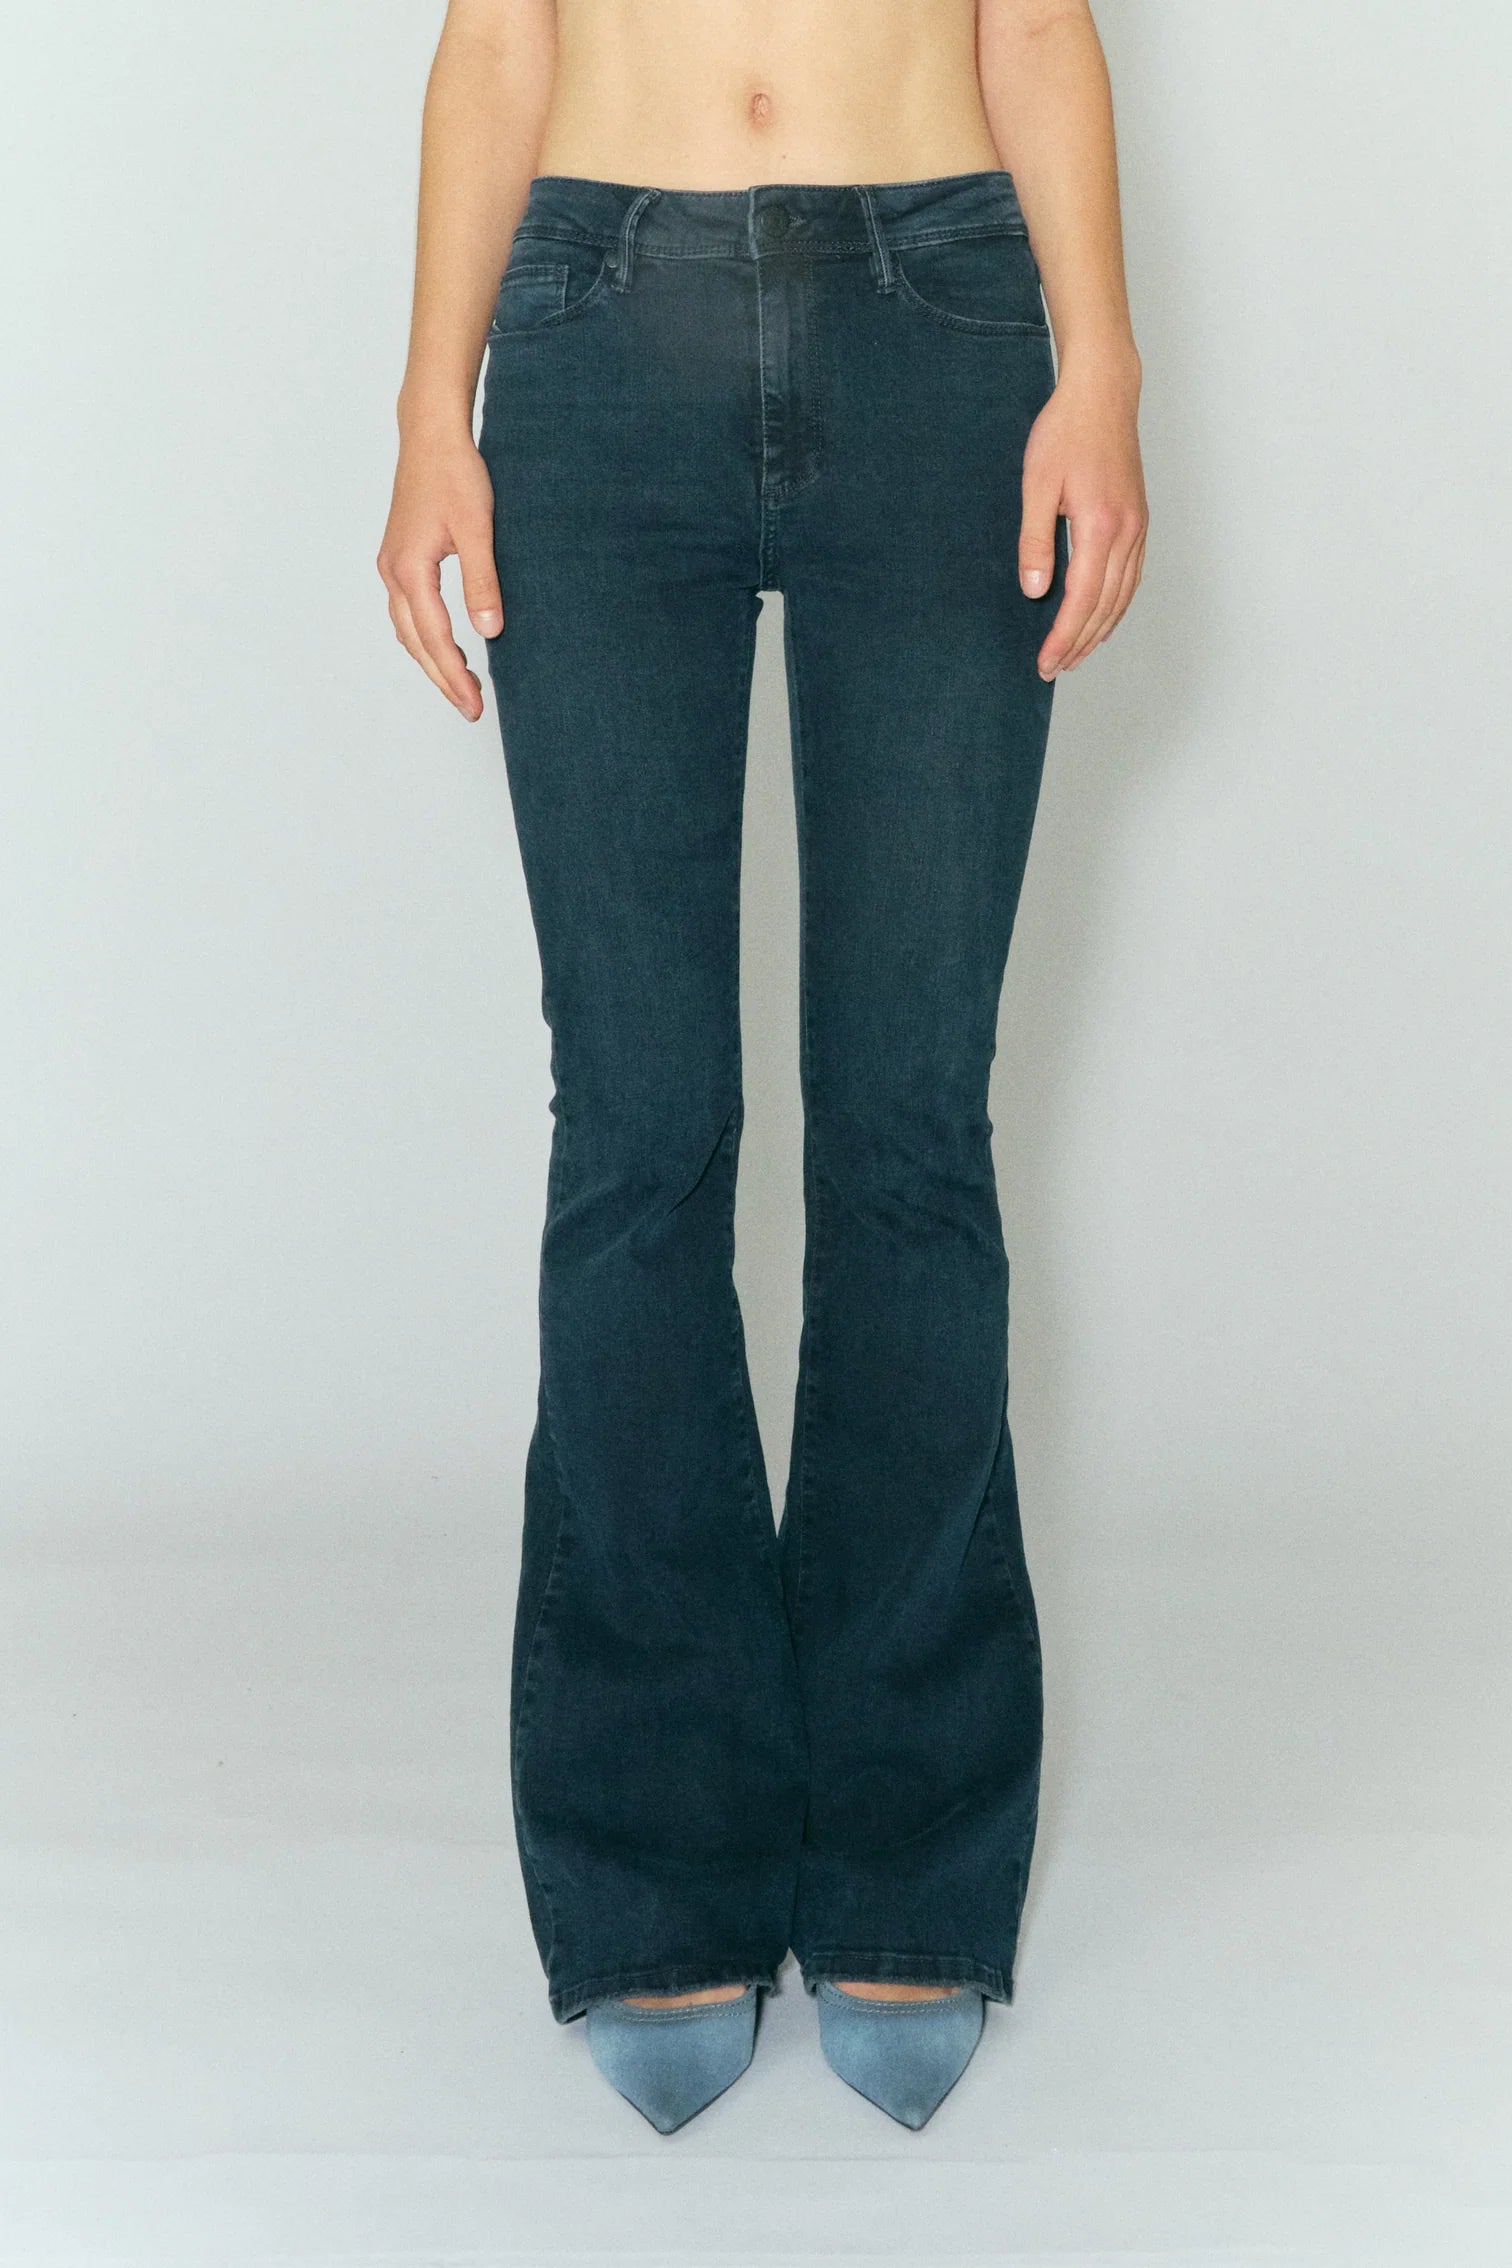 Model wears long flared jeans in dark blue wash